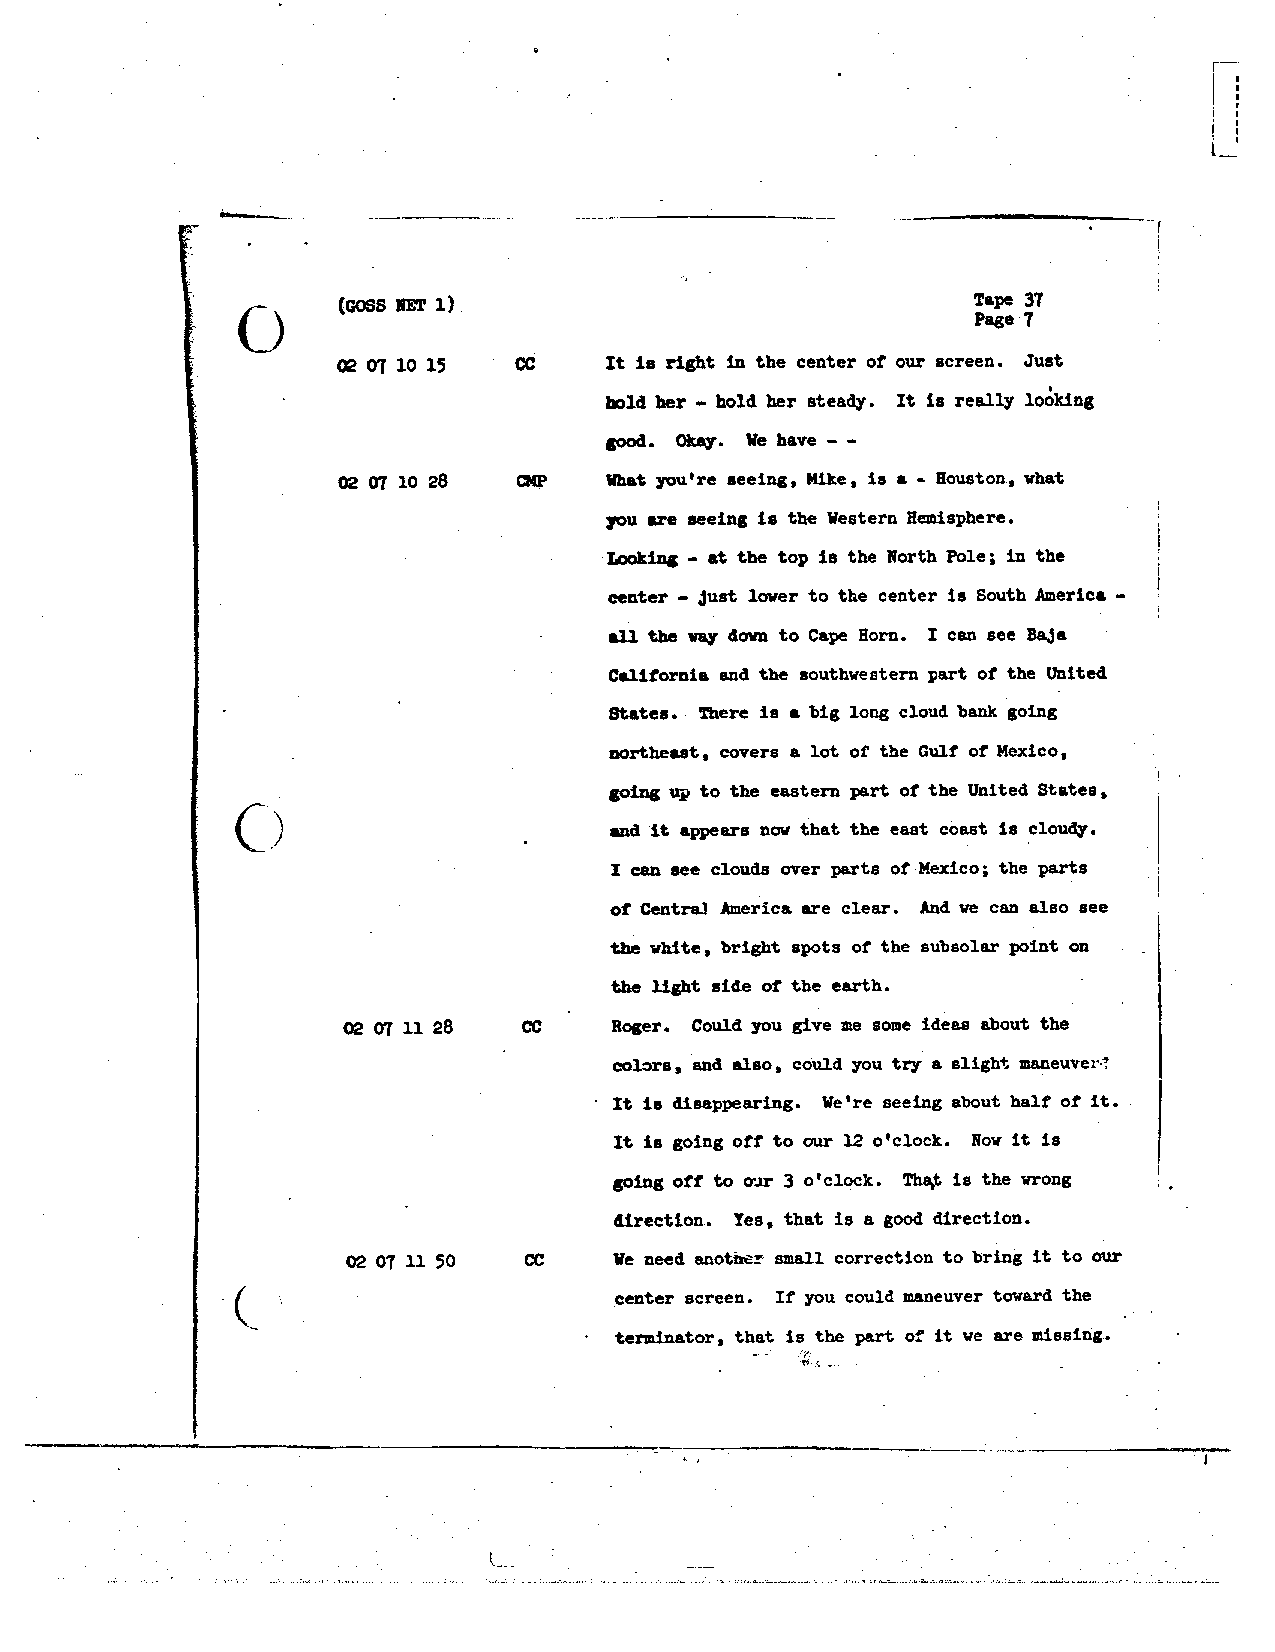 Page 289 of Apollo 8’s original transcript